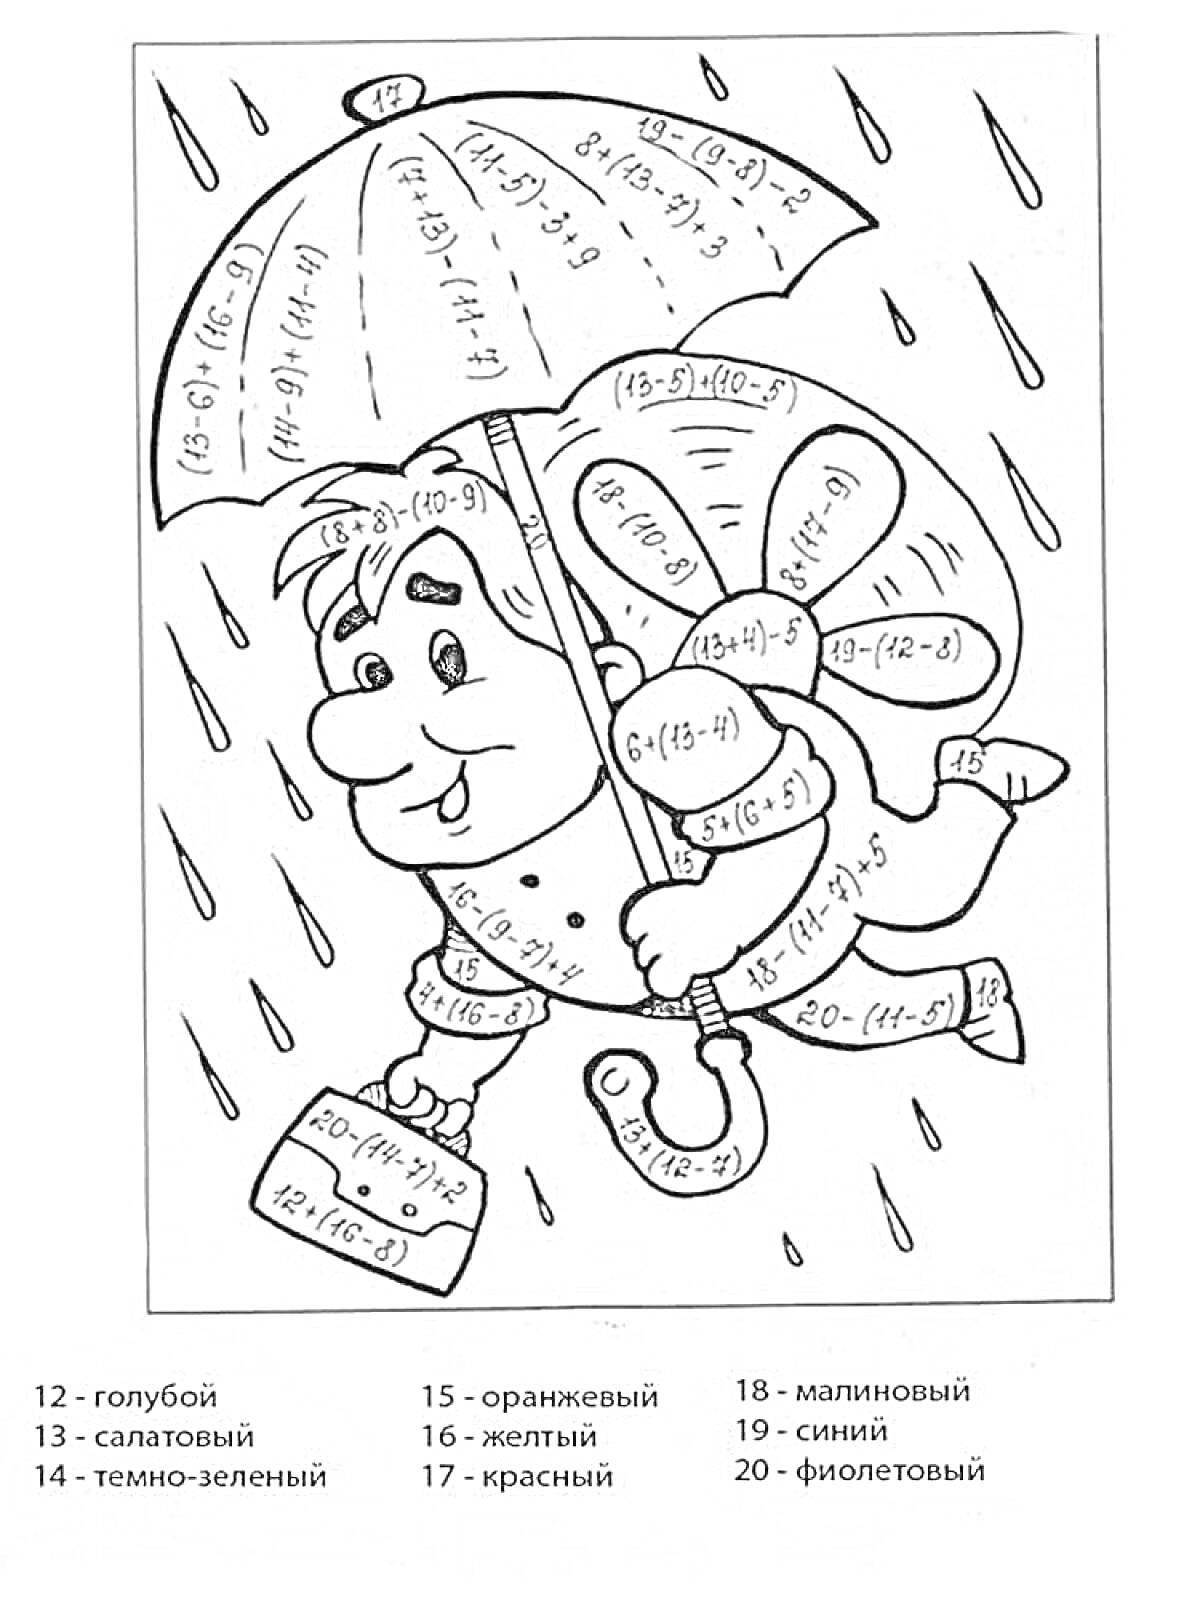 Раскраска Мальчик с зонтом под дождем, цвет по результатам вычислений